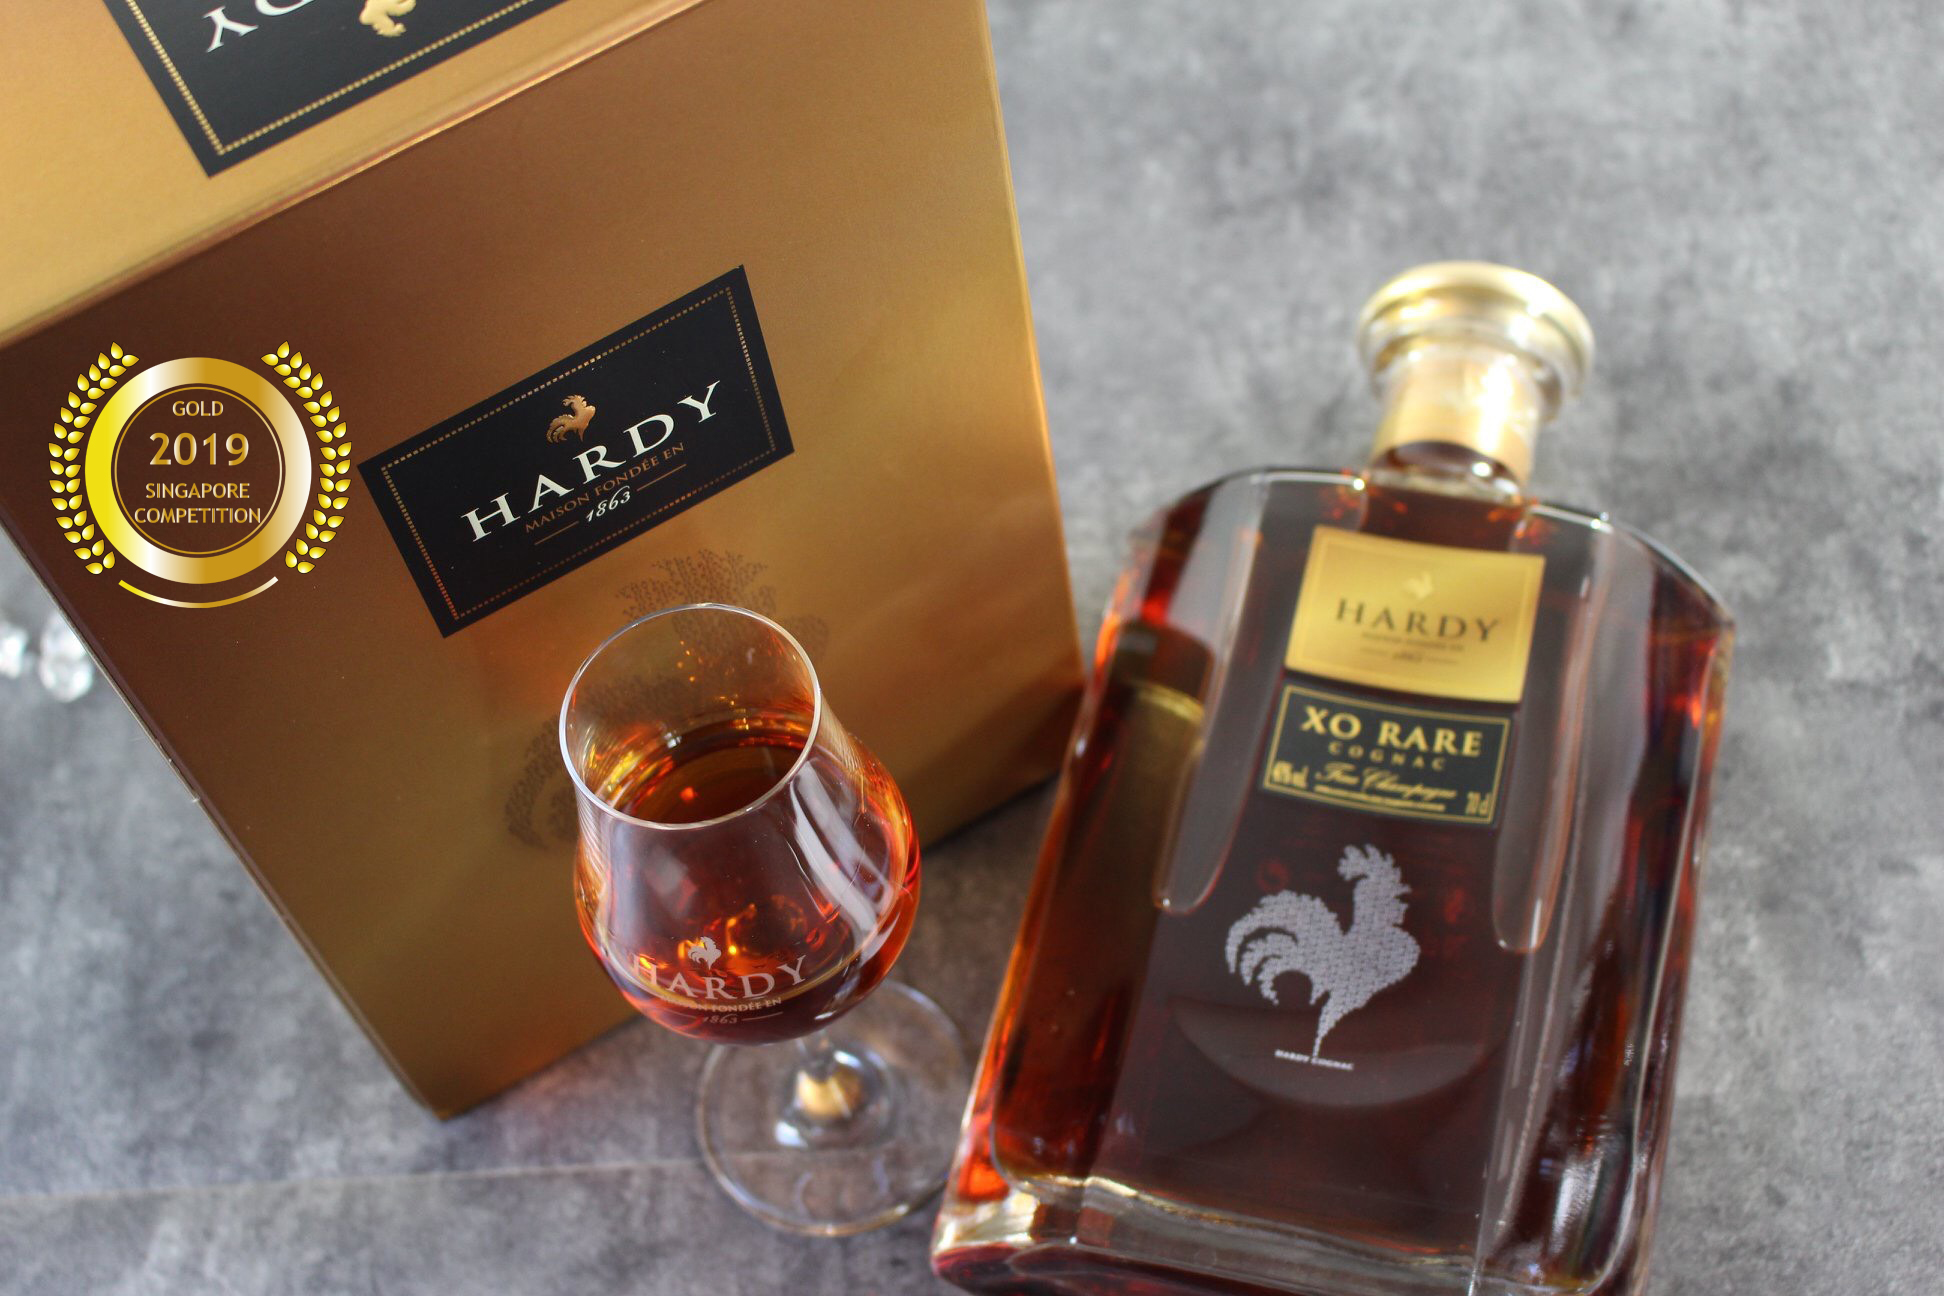 A. Hardy Cognac XO